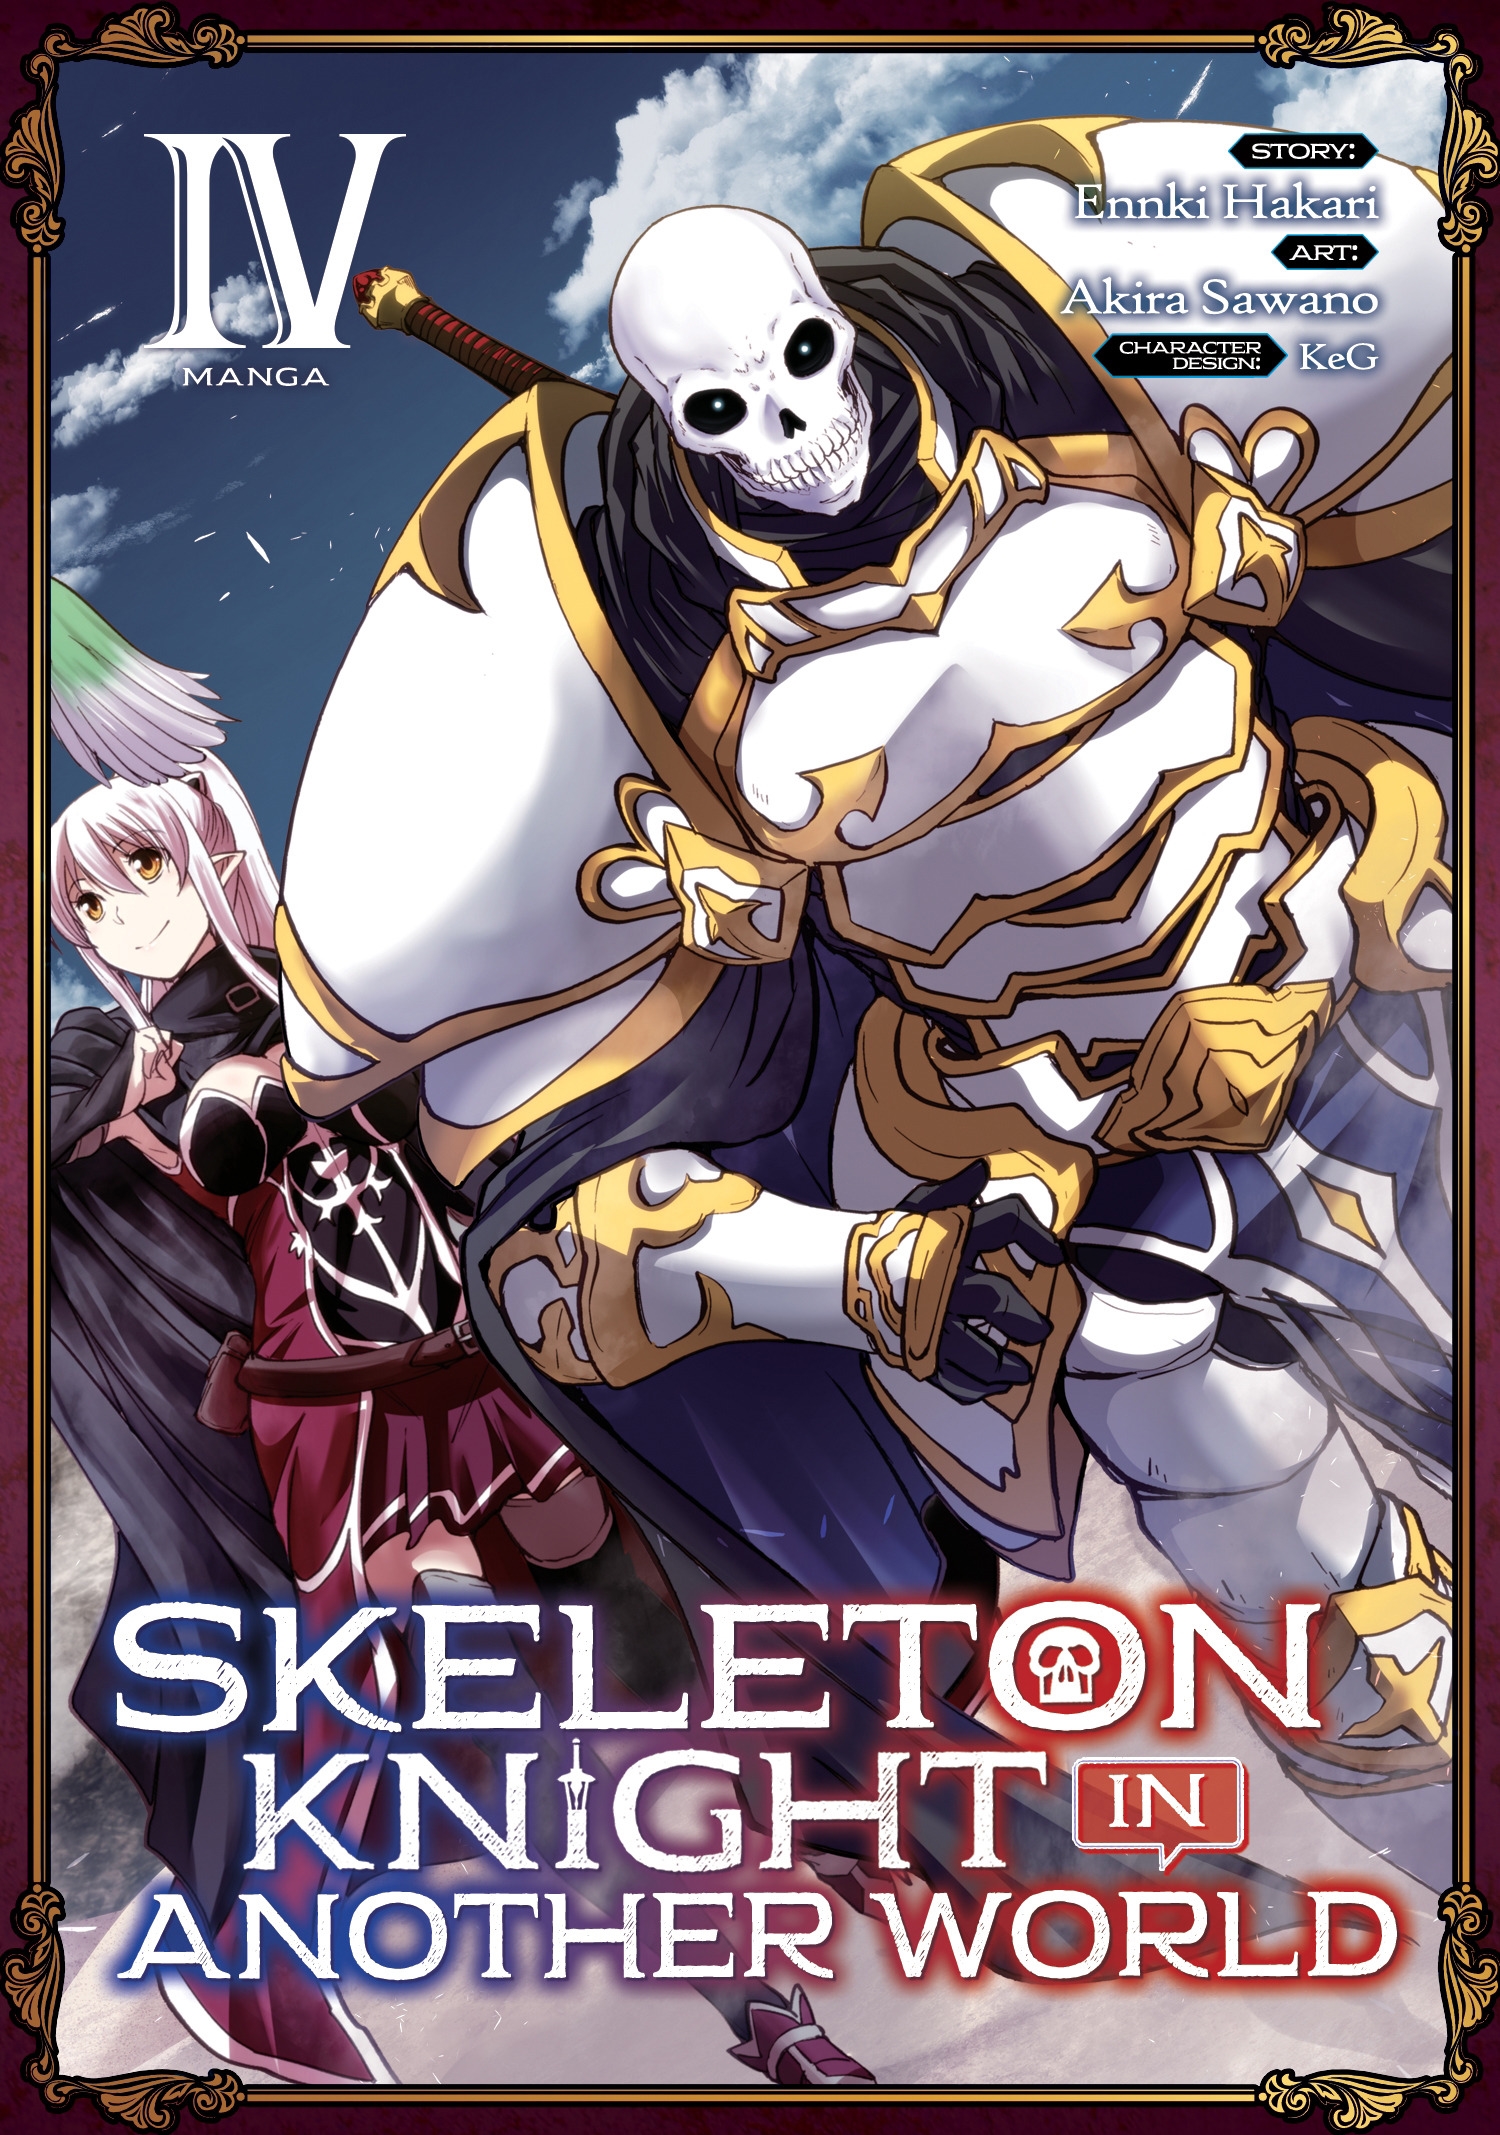 Skeleton Knight in Another World – O isekai do esqueleto e do mau